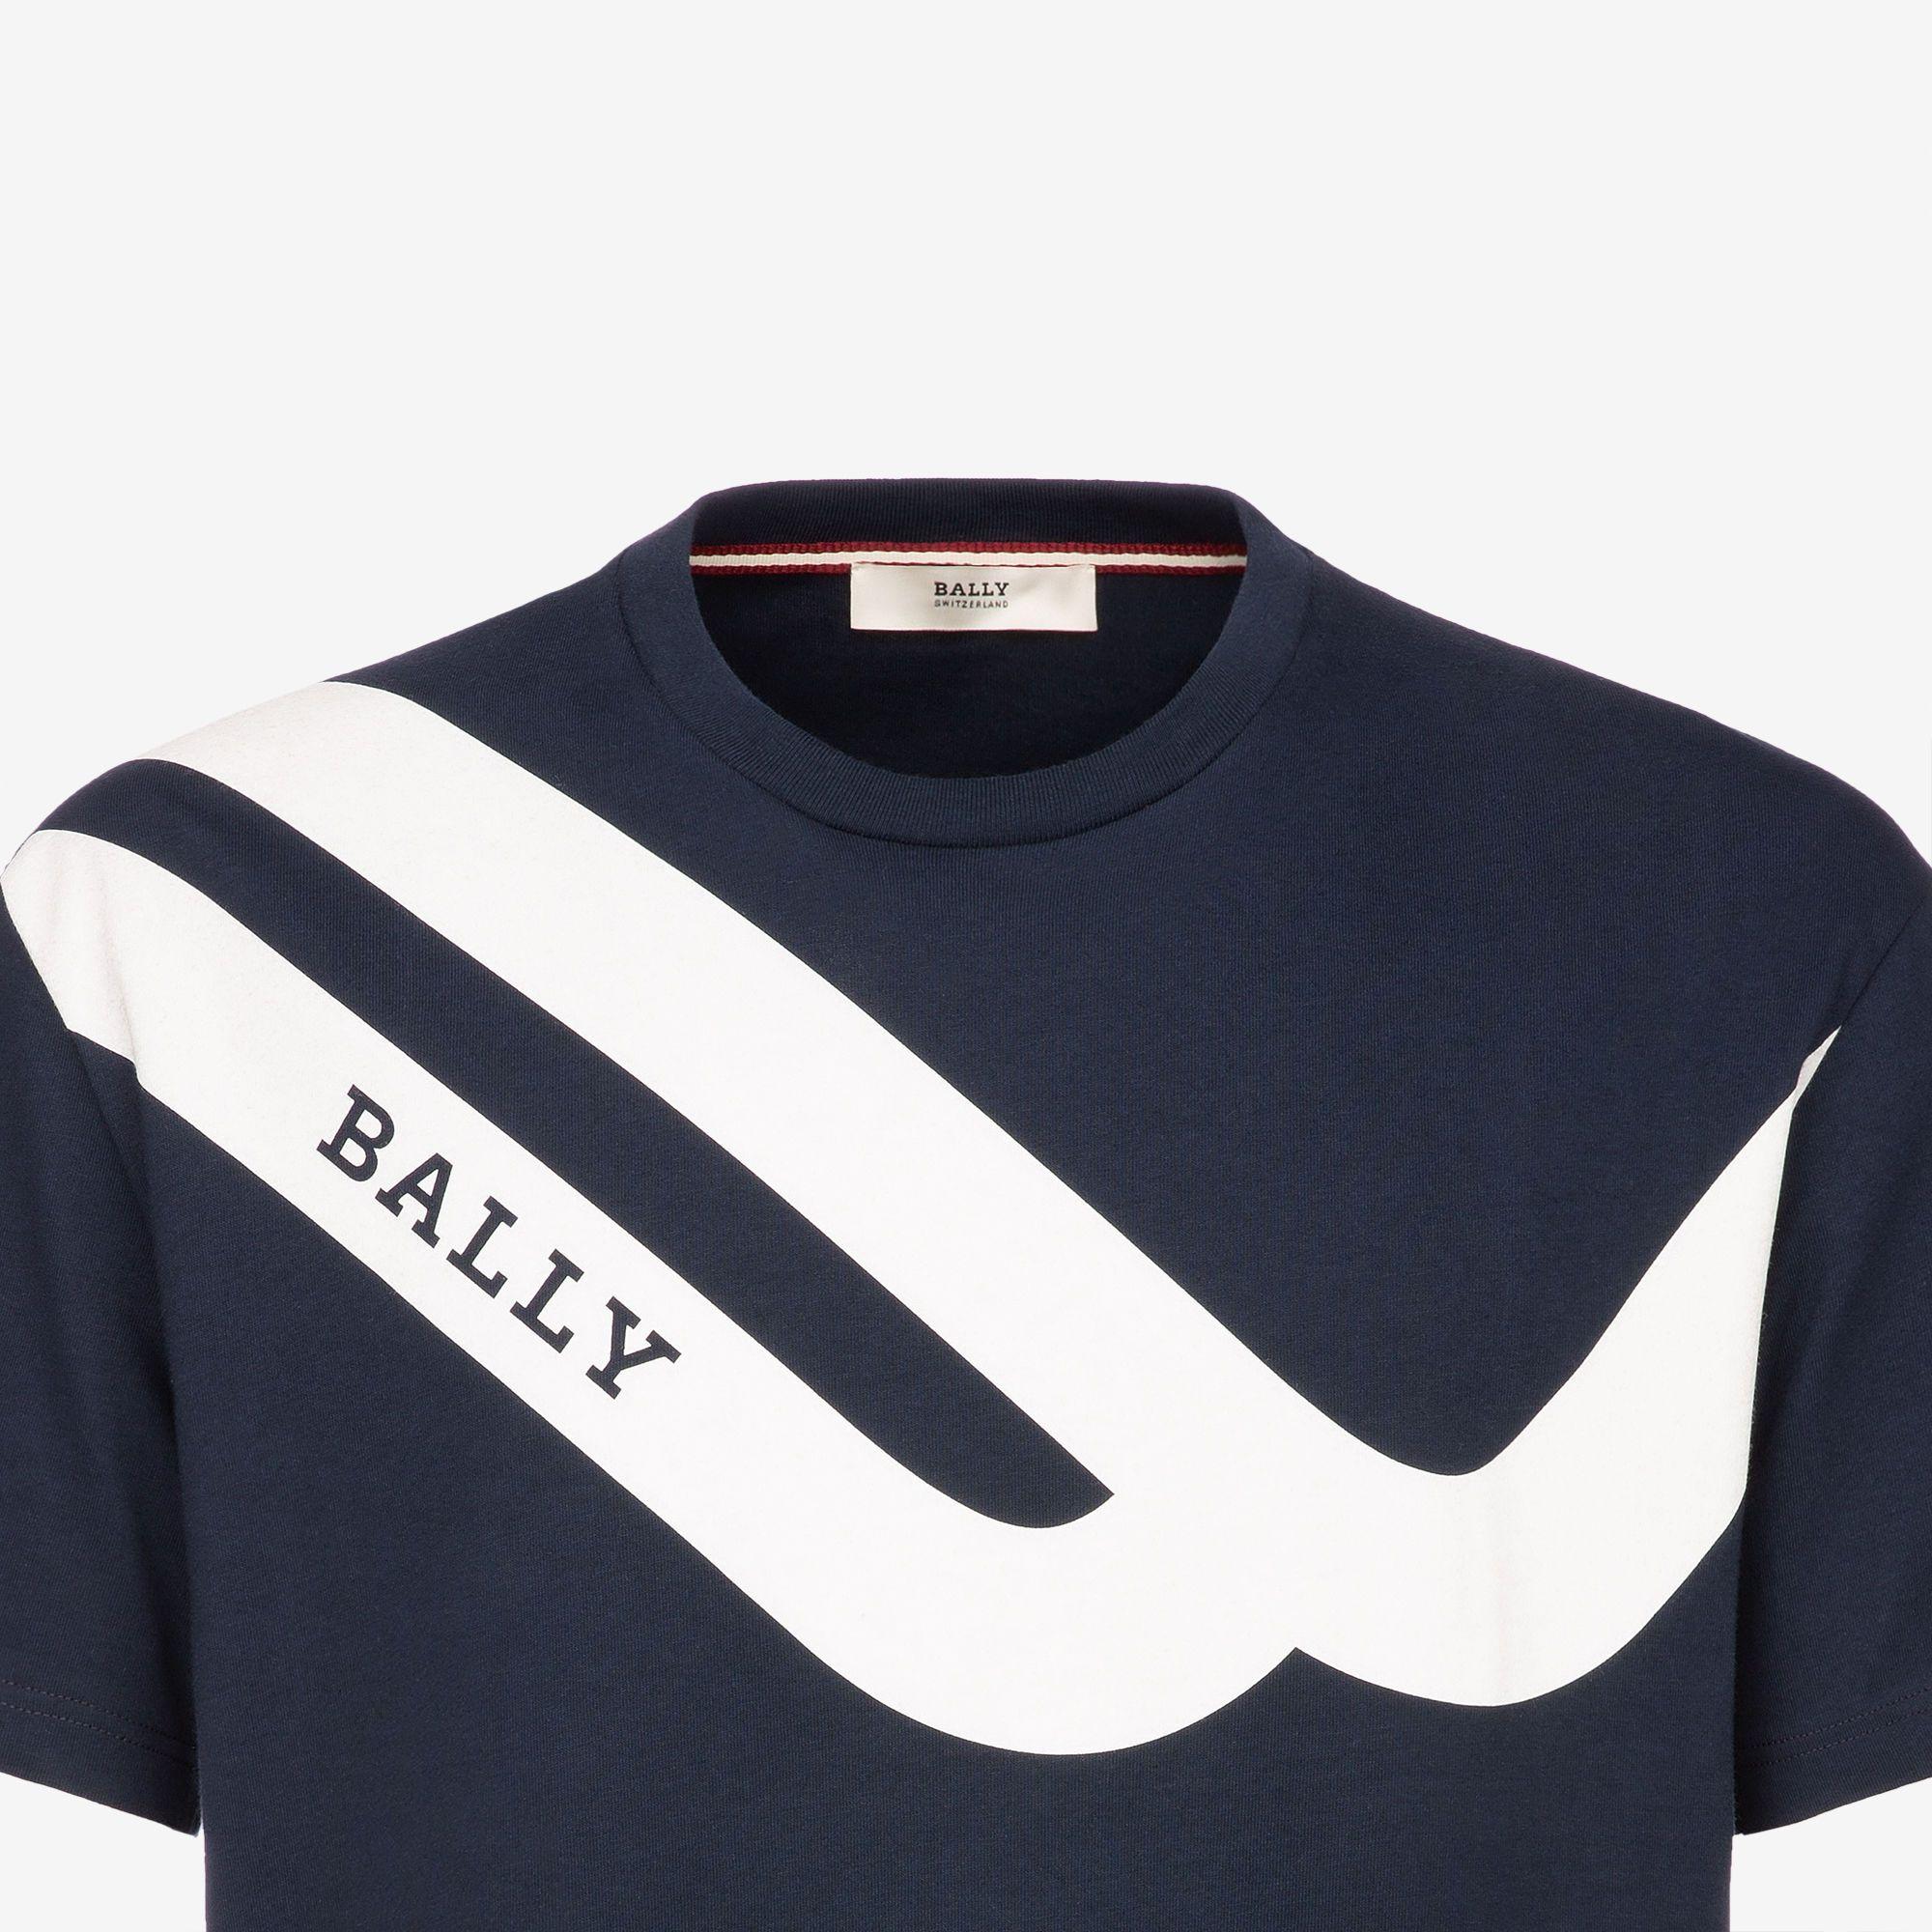 Bally Clothing Logo - Men's Designer Shirts & Tops | Bally